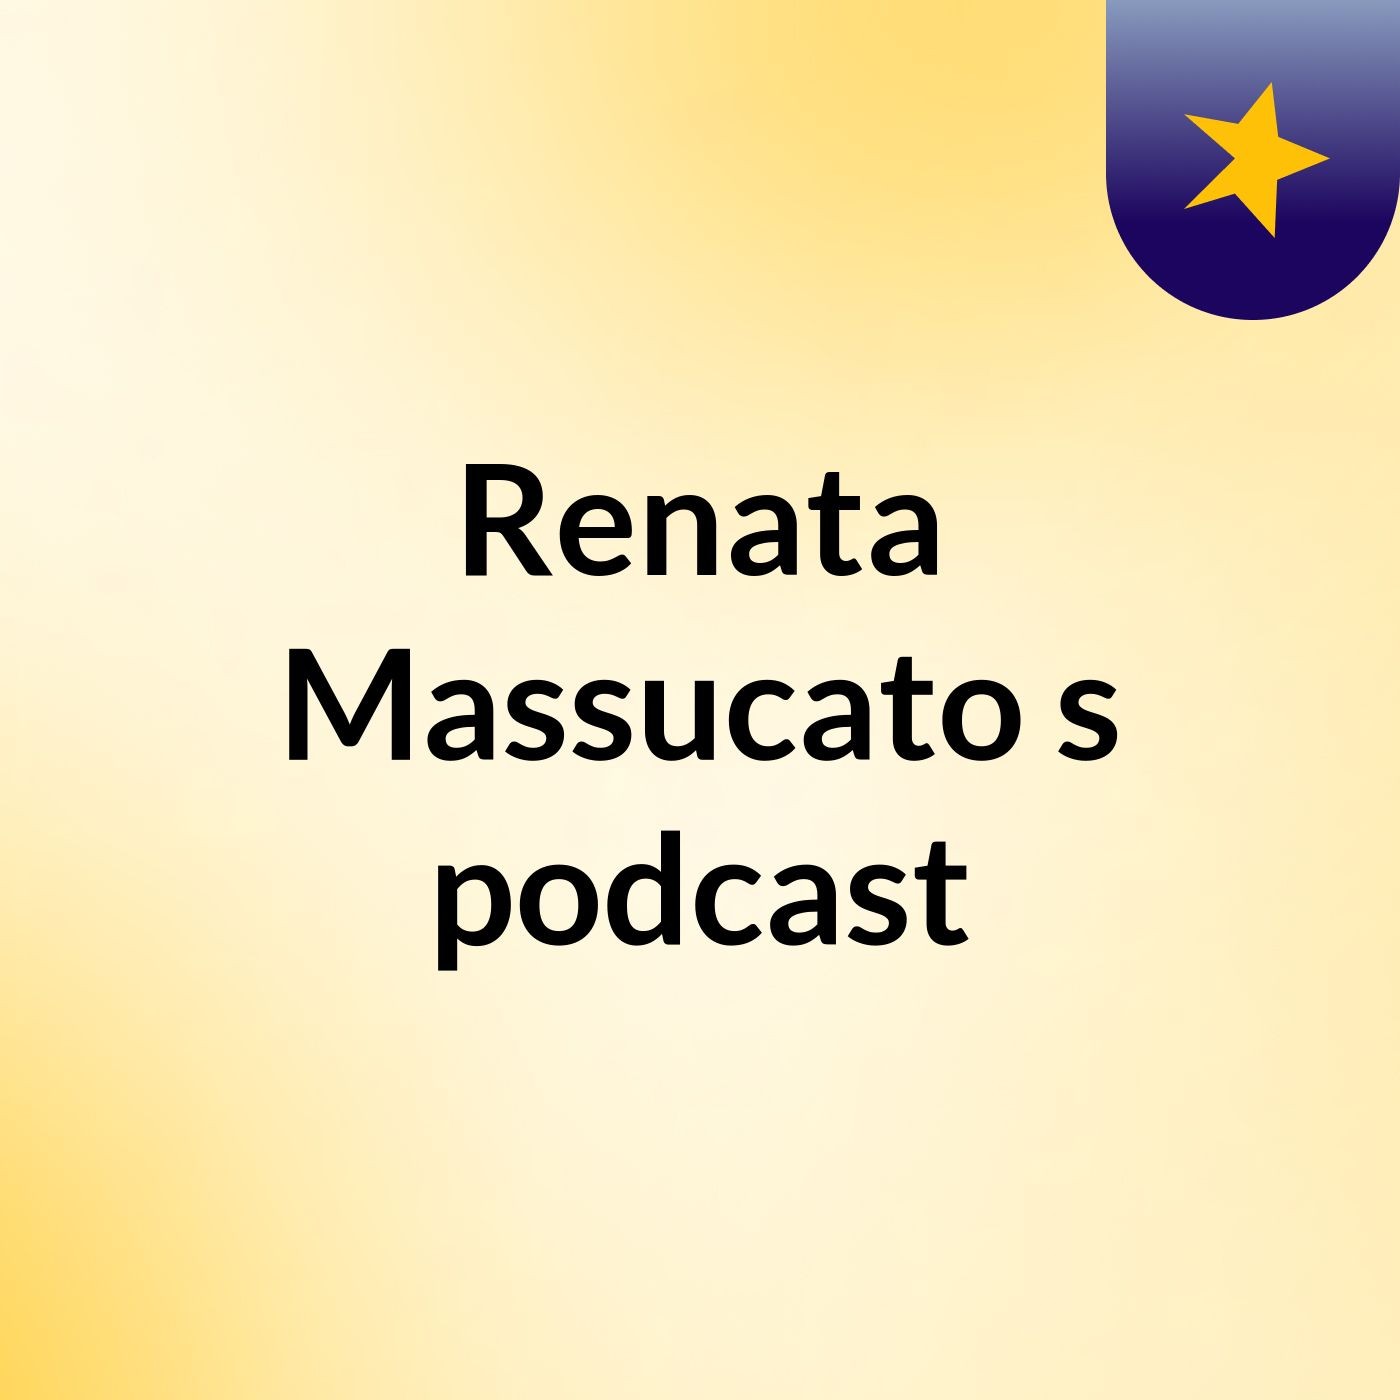 Renata Massucato's podcast